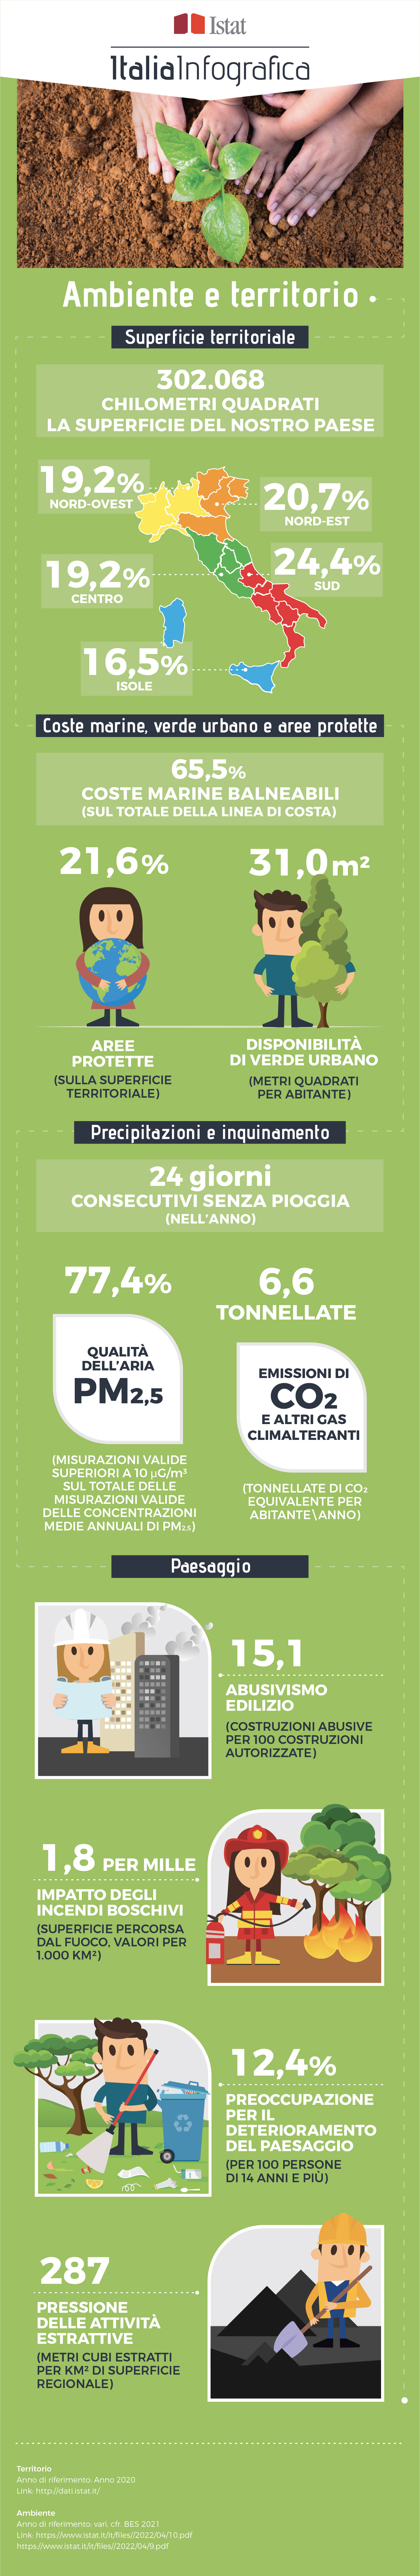 immagine di infografica con titolo ItaliaInfografica-Ambiente e territorio